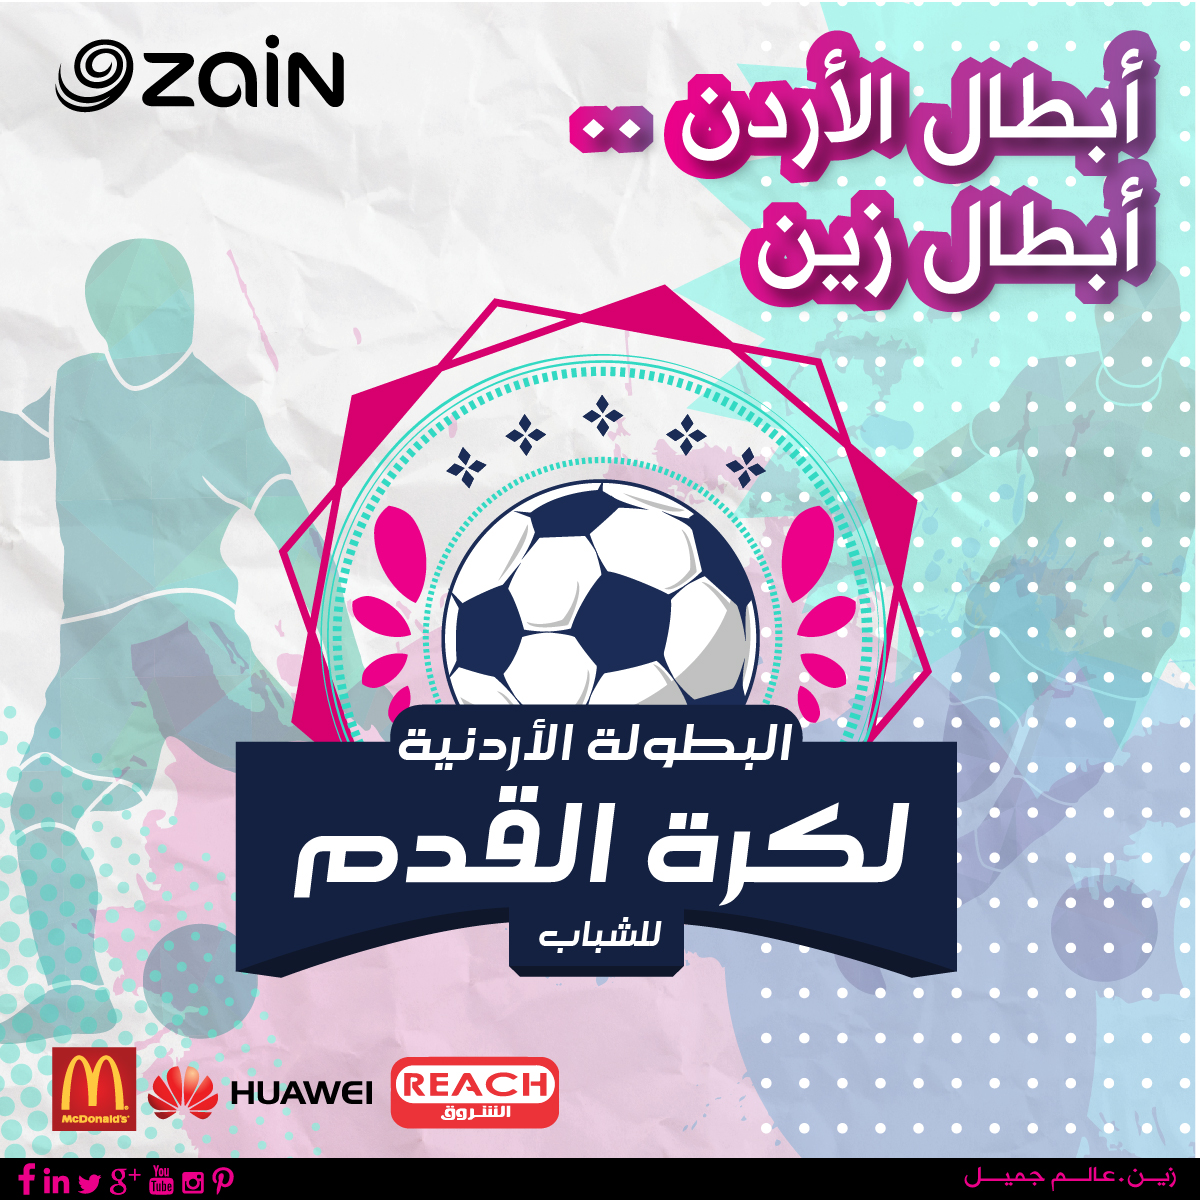 تبدأ تصفياتها من محافظة اربد بطولة زين لكرة القدم للشباب تنطلق الجمعة